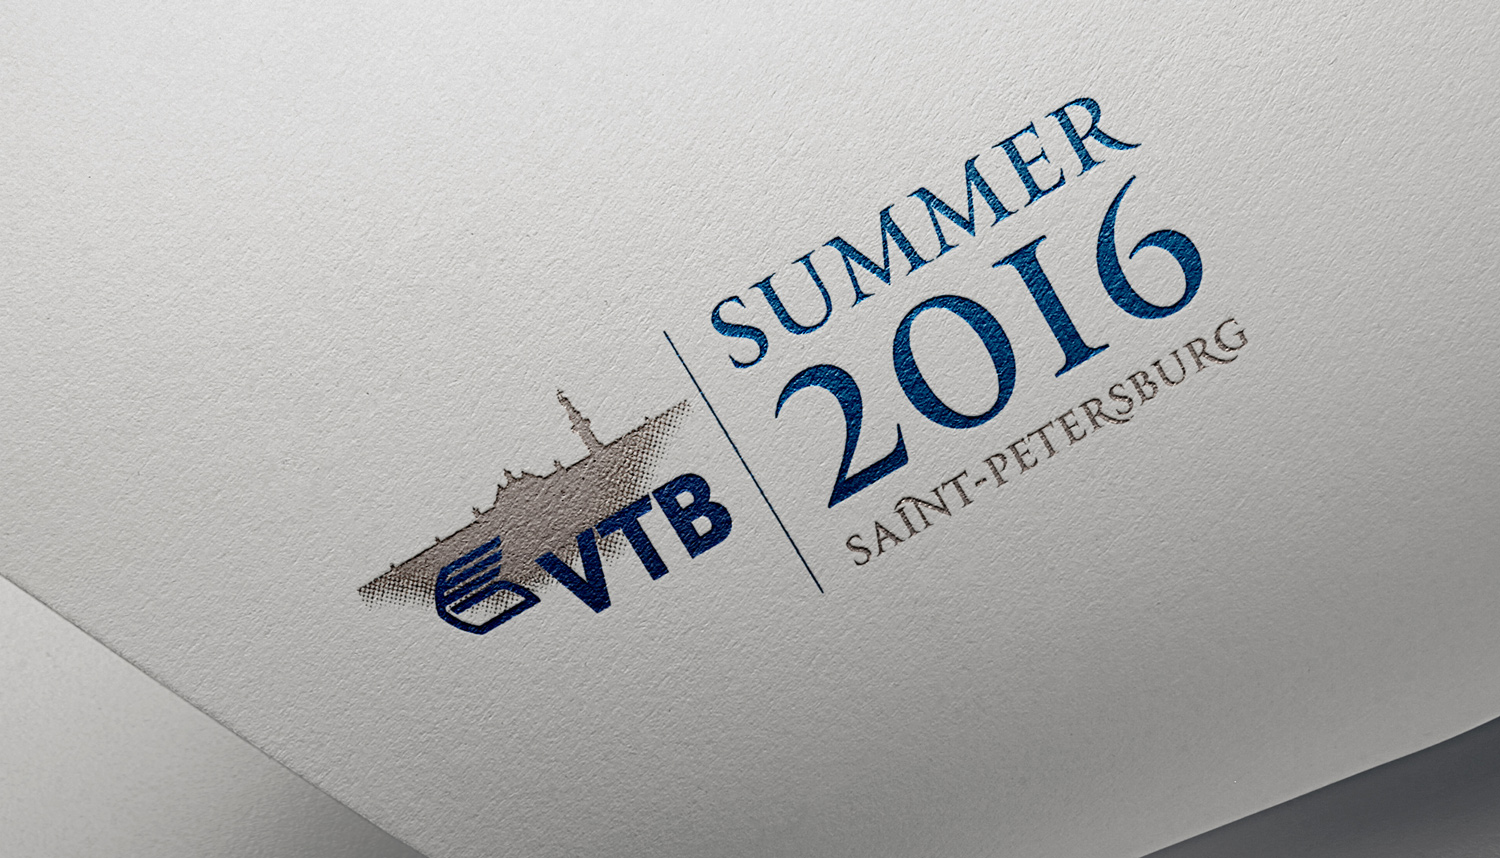 VTB GALA 2016  брендинг мероприятия